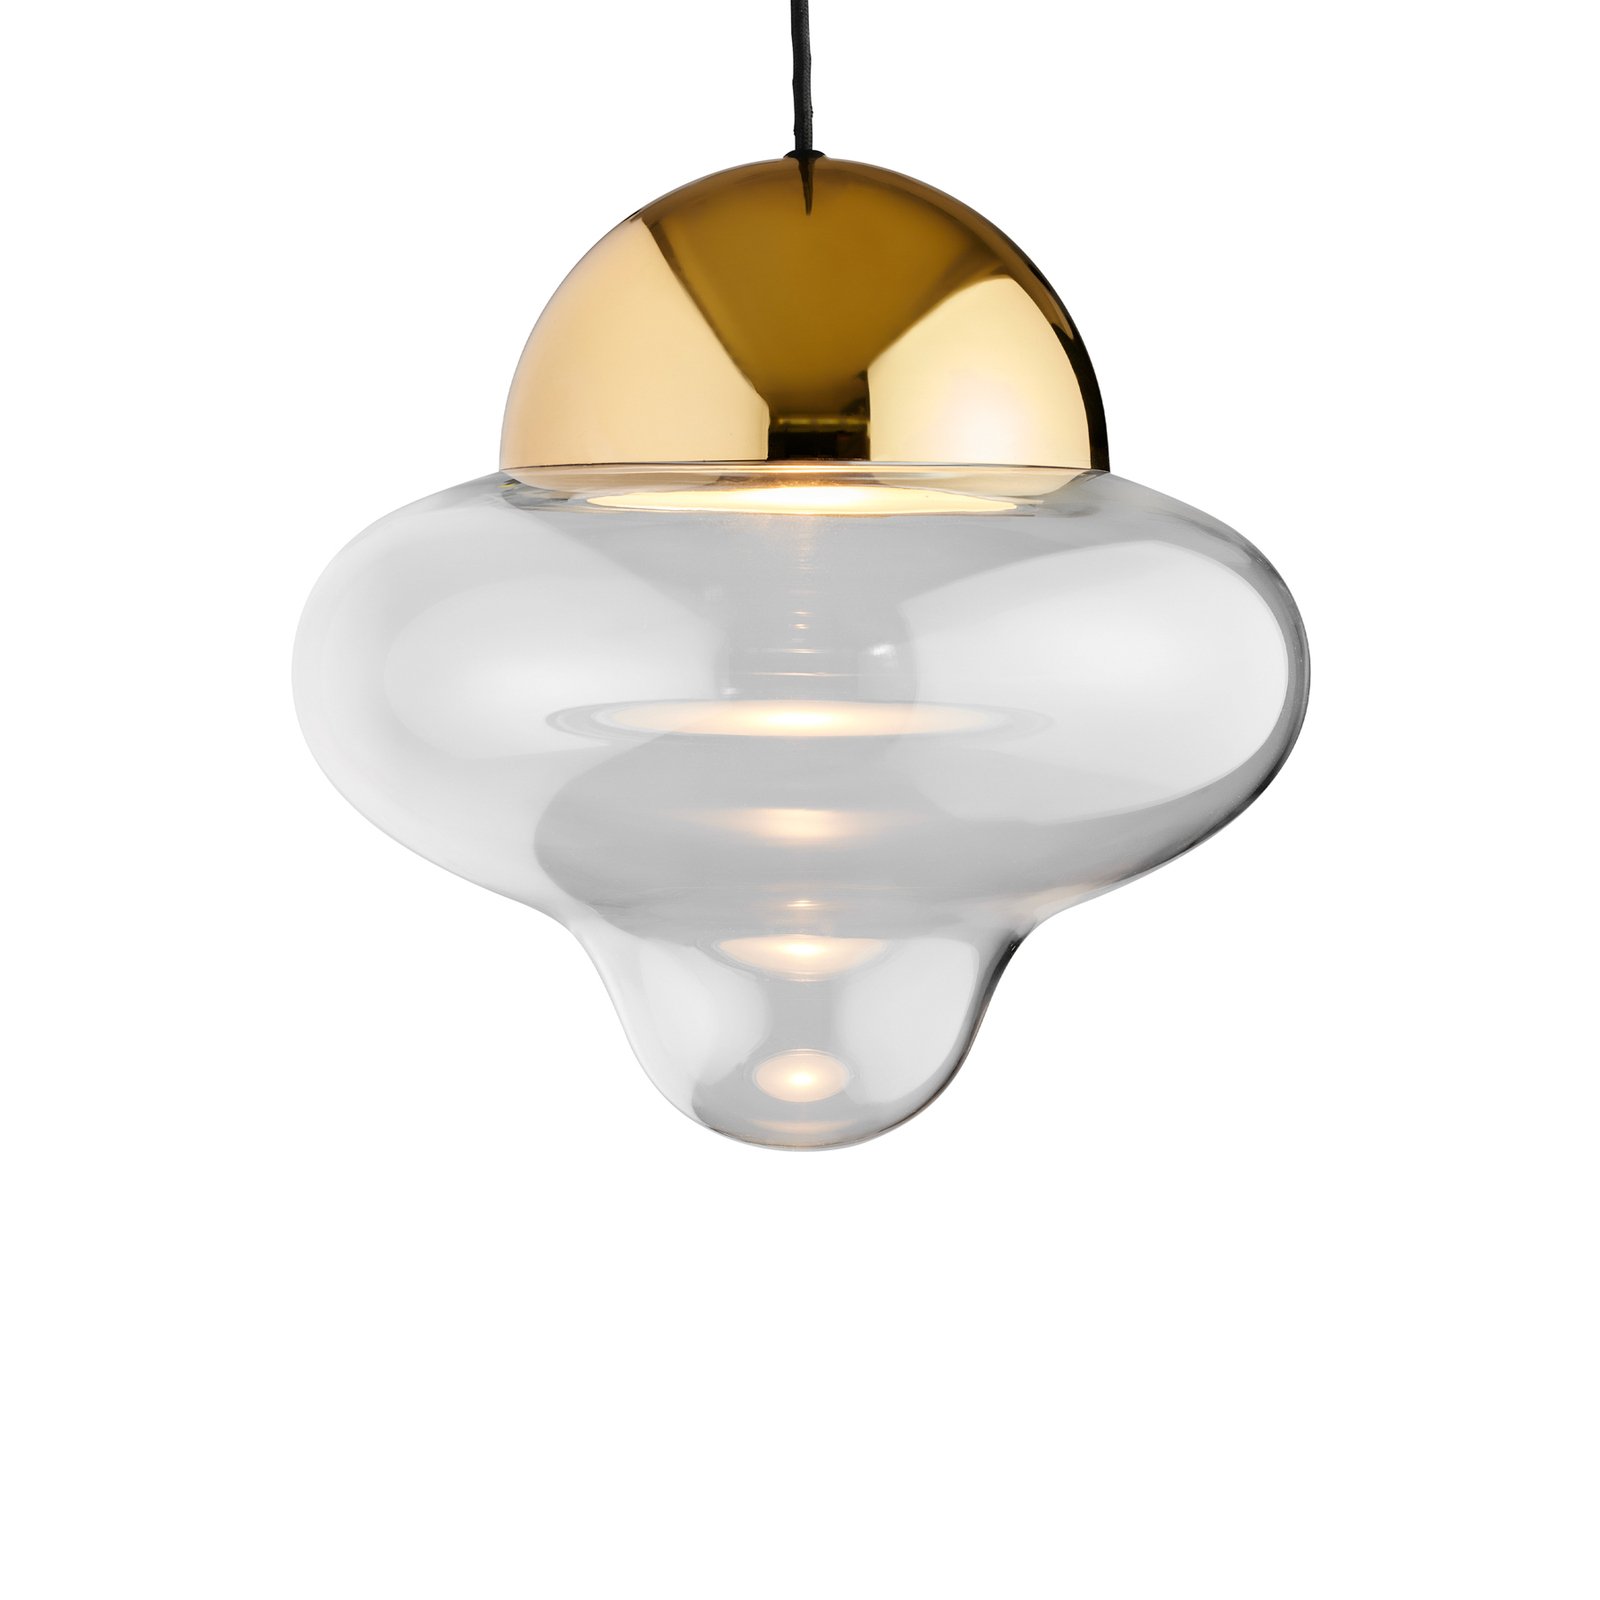 Hanglamp Nutty XL, helder/goudkleurig, Ø 30 cm, glas